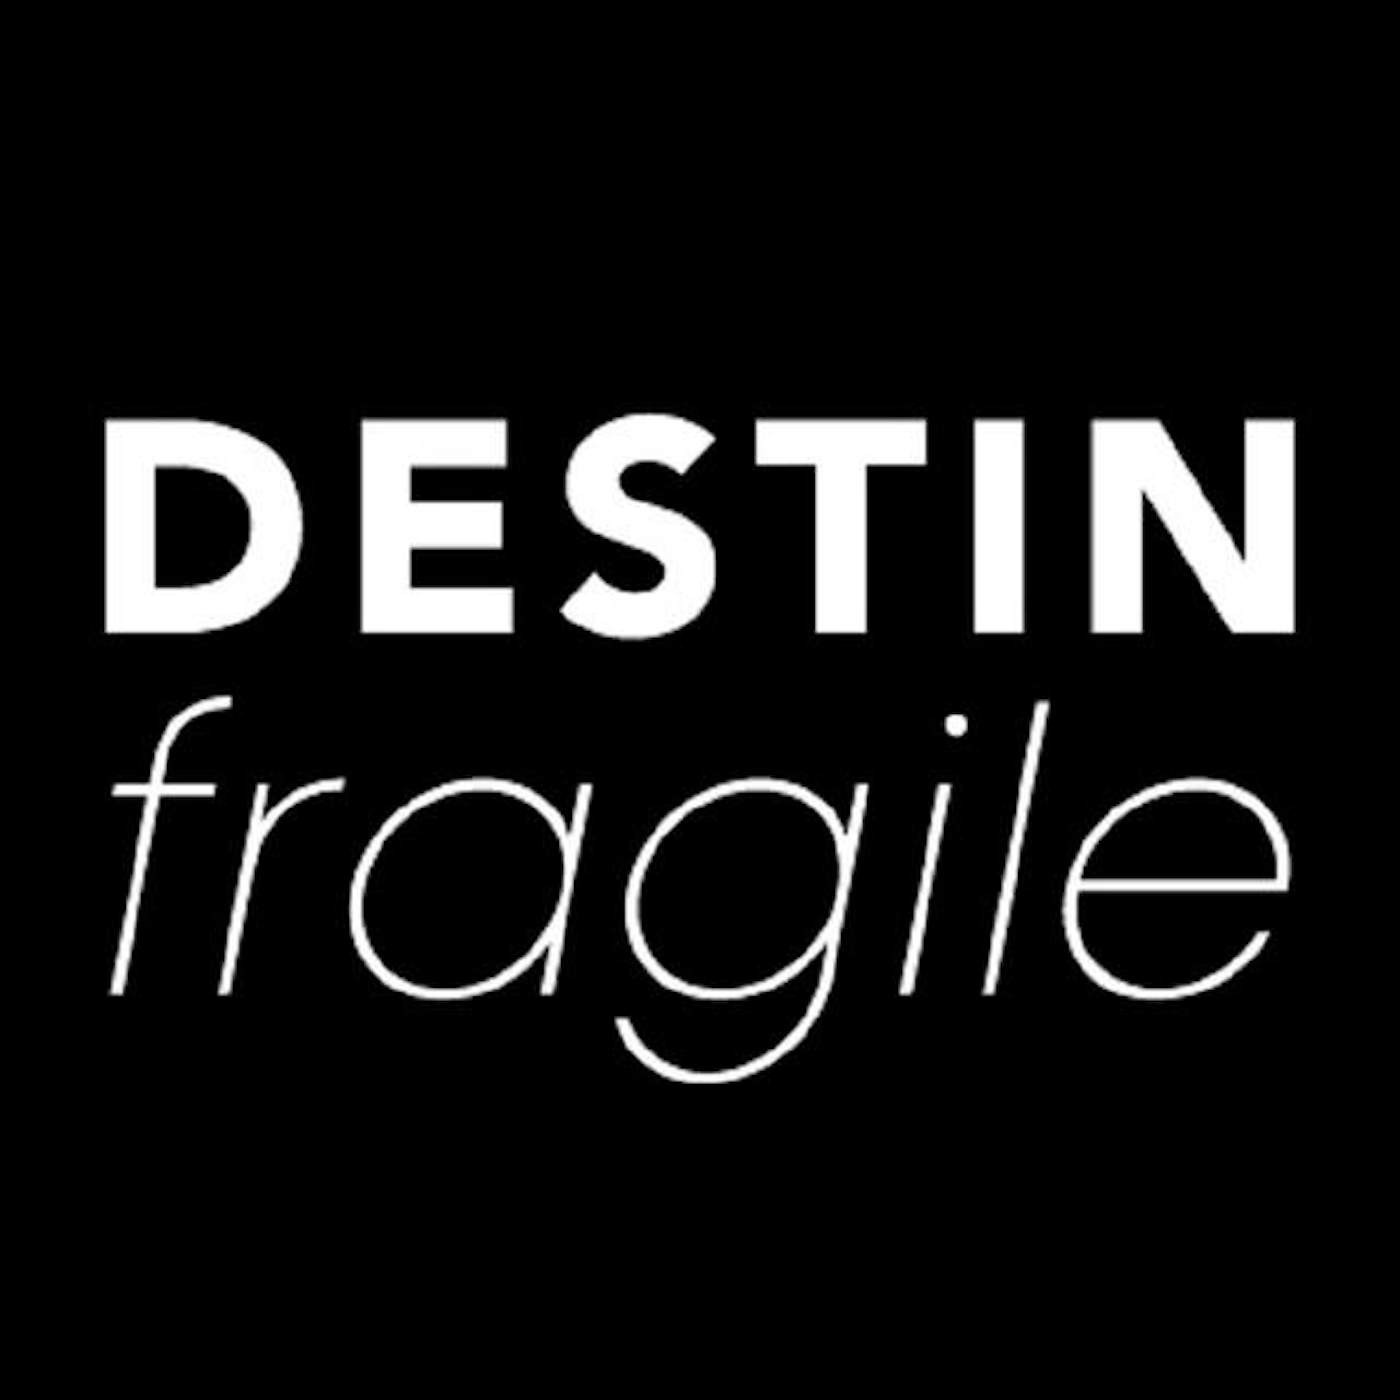 Destin Fragile